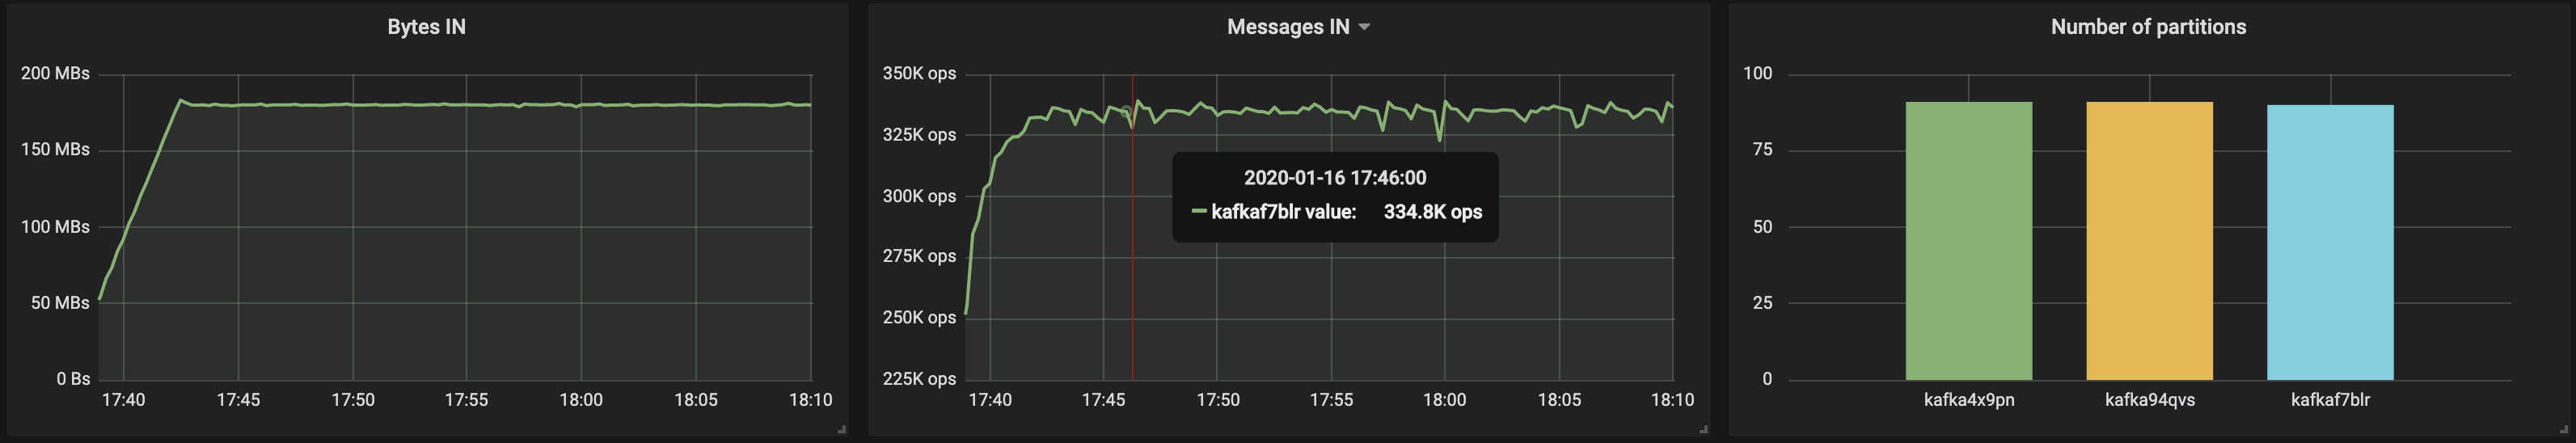 kafkaf7blr messages in